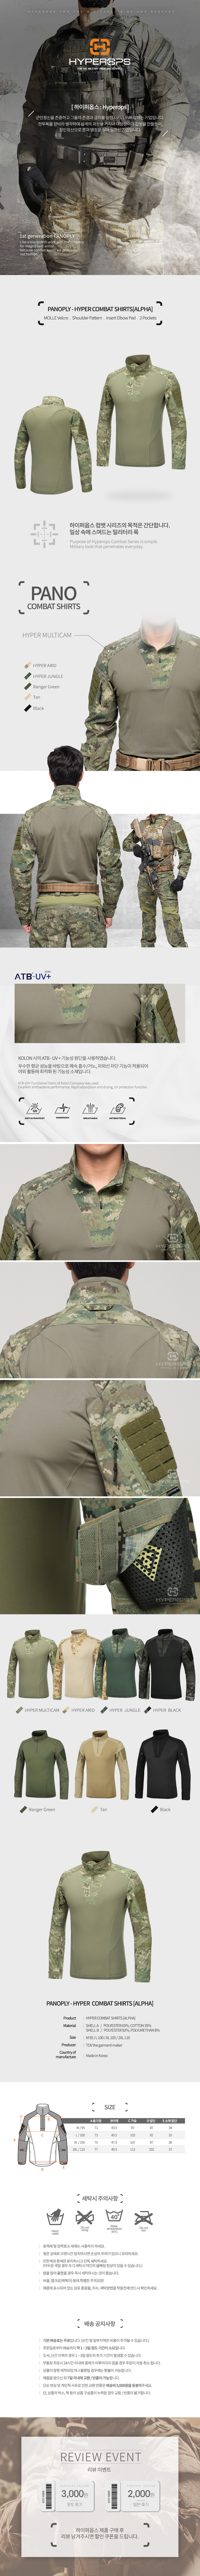 [Gen.1] PANO-Combat shirt (Alpha)_D.jpg